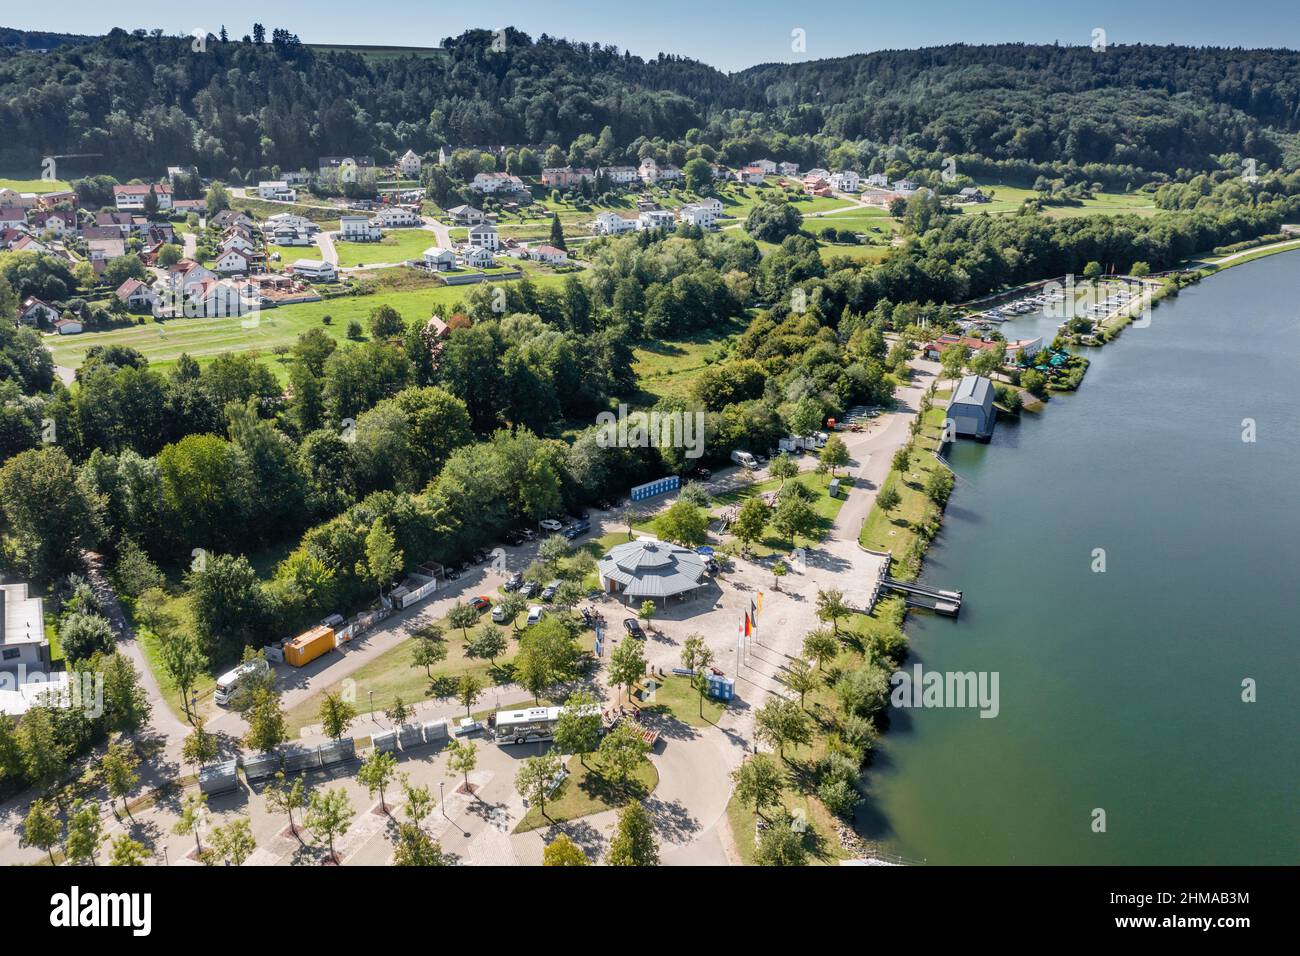 Luftbild Anlegestelle Beilngries am Rhein-Main-Donau-Kanal im Naturpark Altmühltal, Bayern, Alemania, un einem sehr warmen Tag im Sommer bei strahl Foto de stock